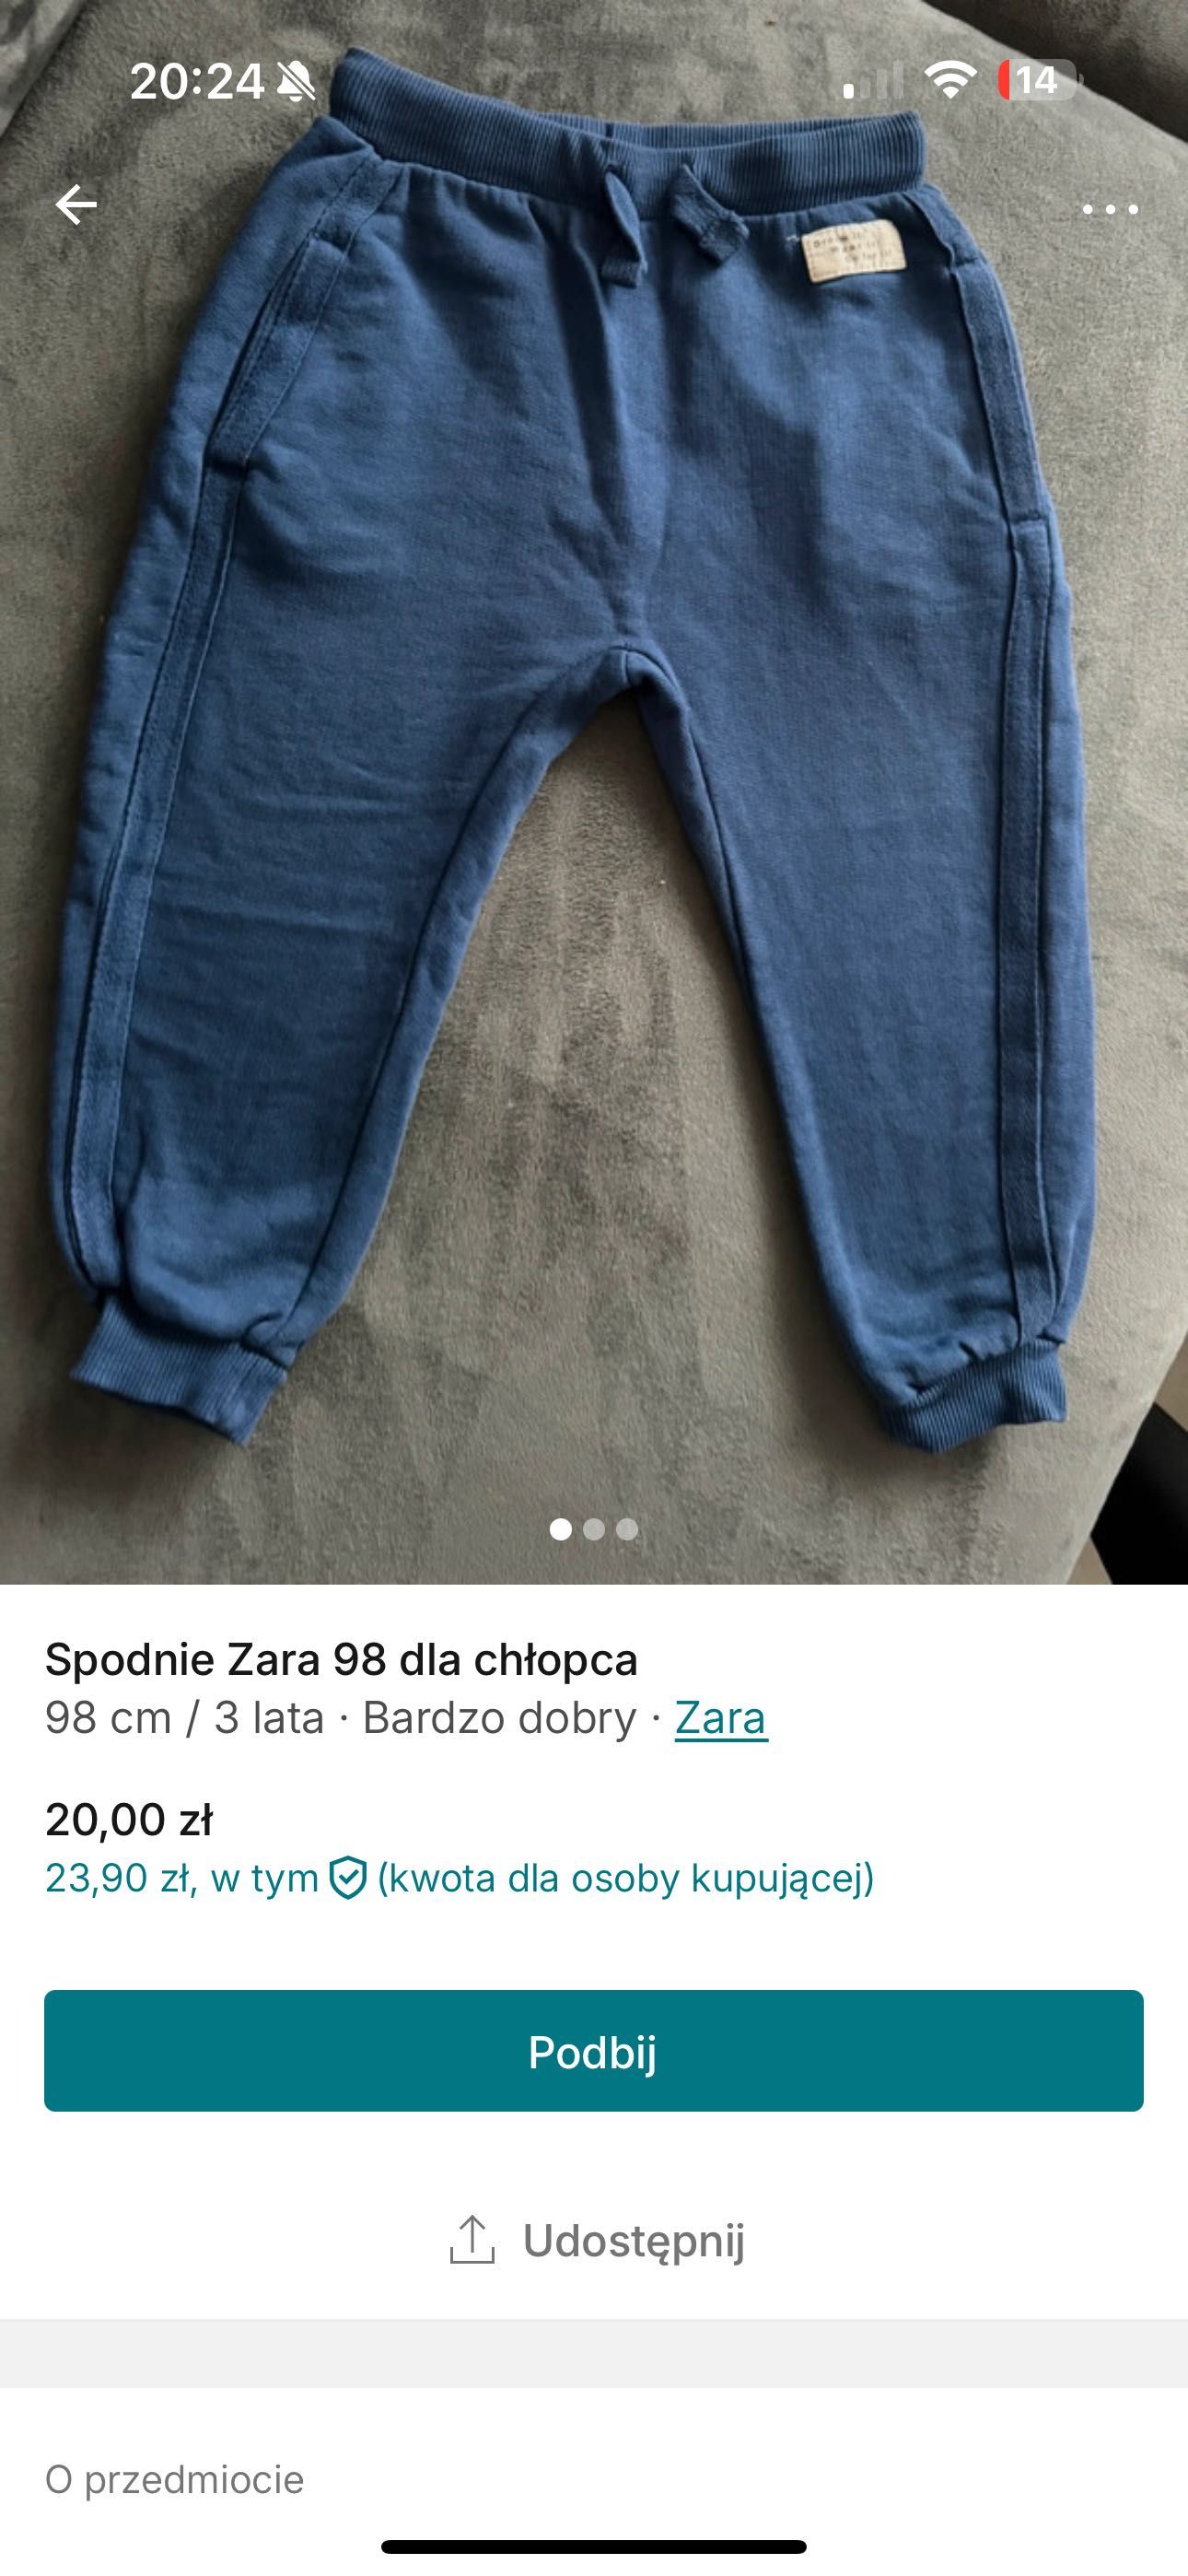 Spodnie dla chłopca Zara 98